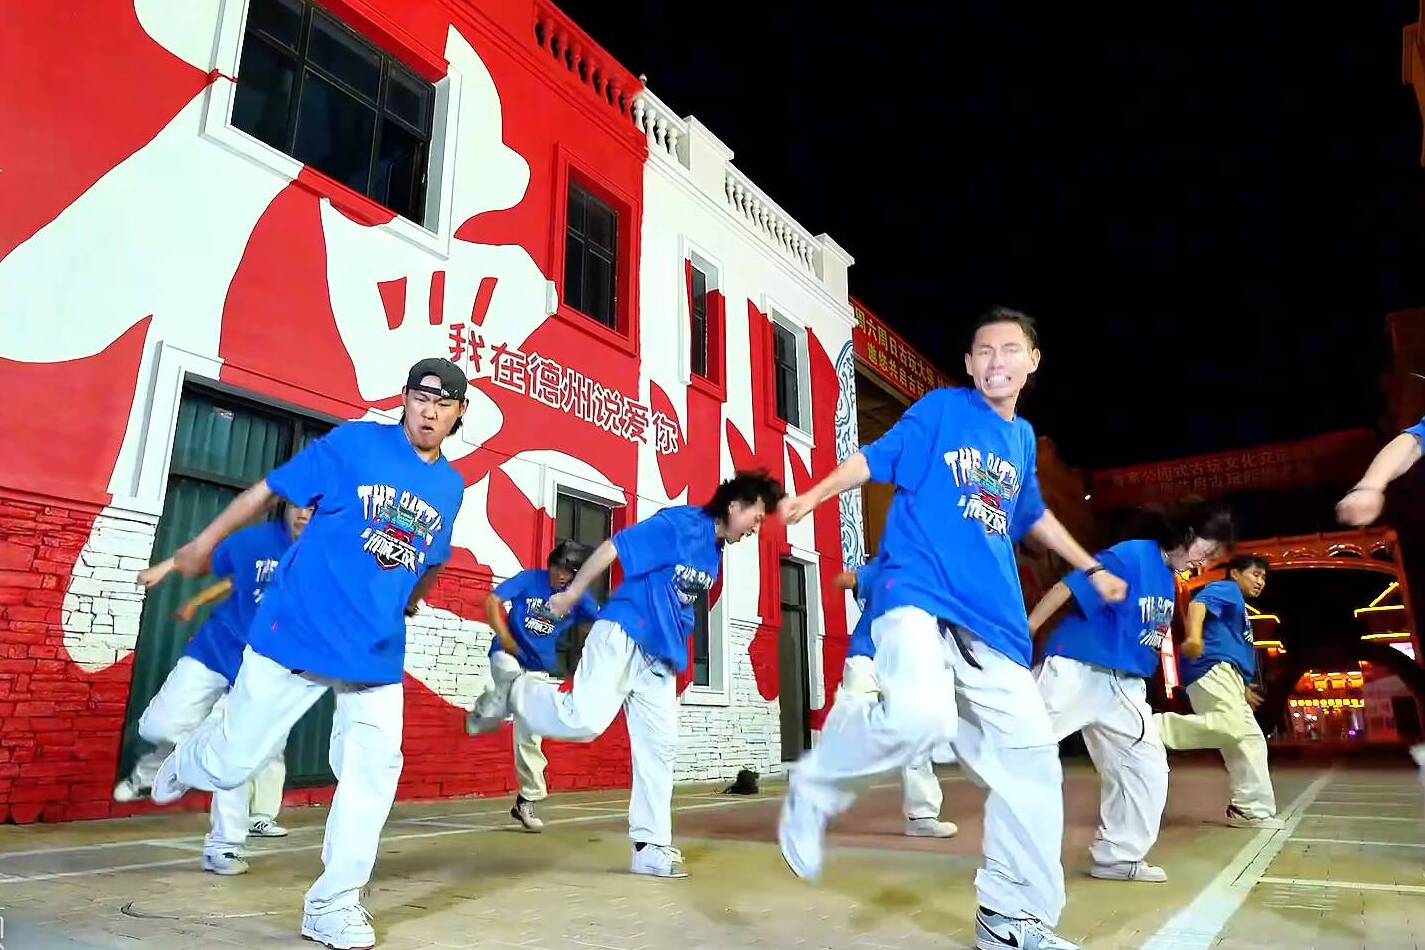 “德州版饿狼”街舞表演来袭 每一步都充满青春活力